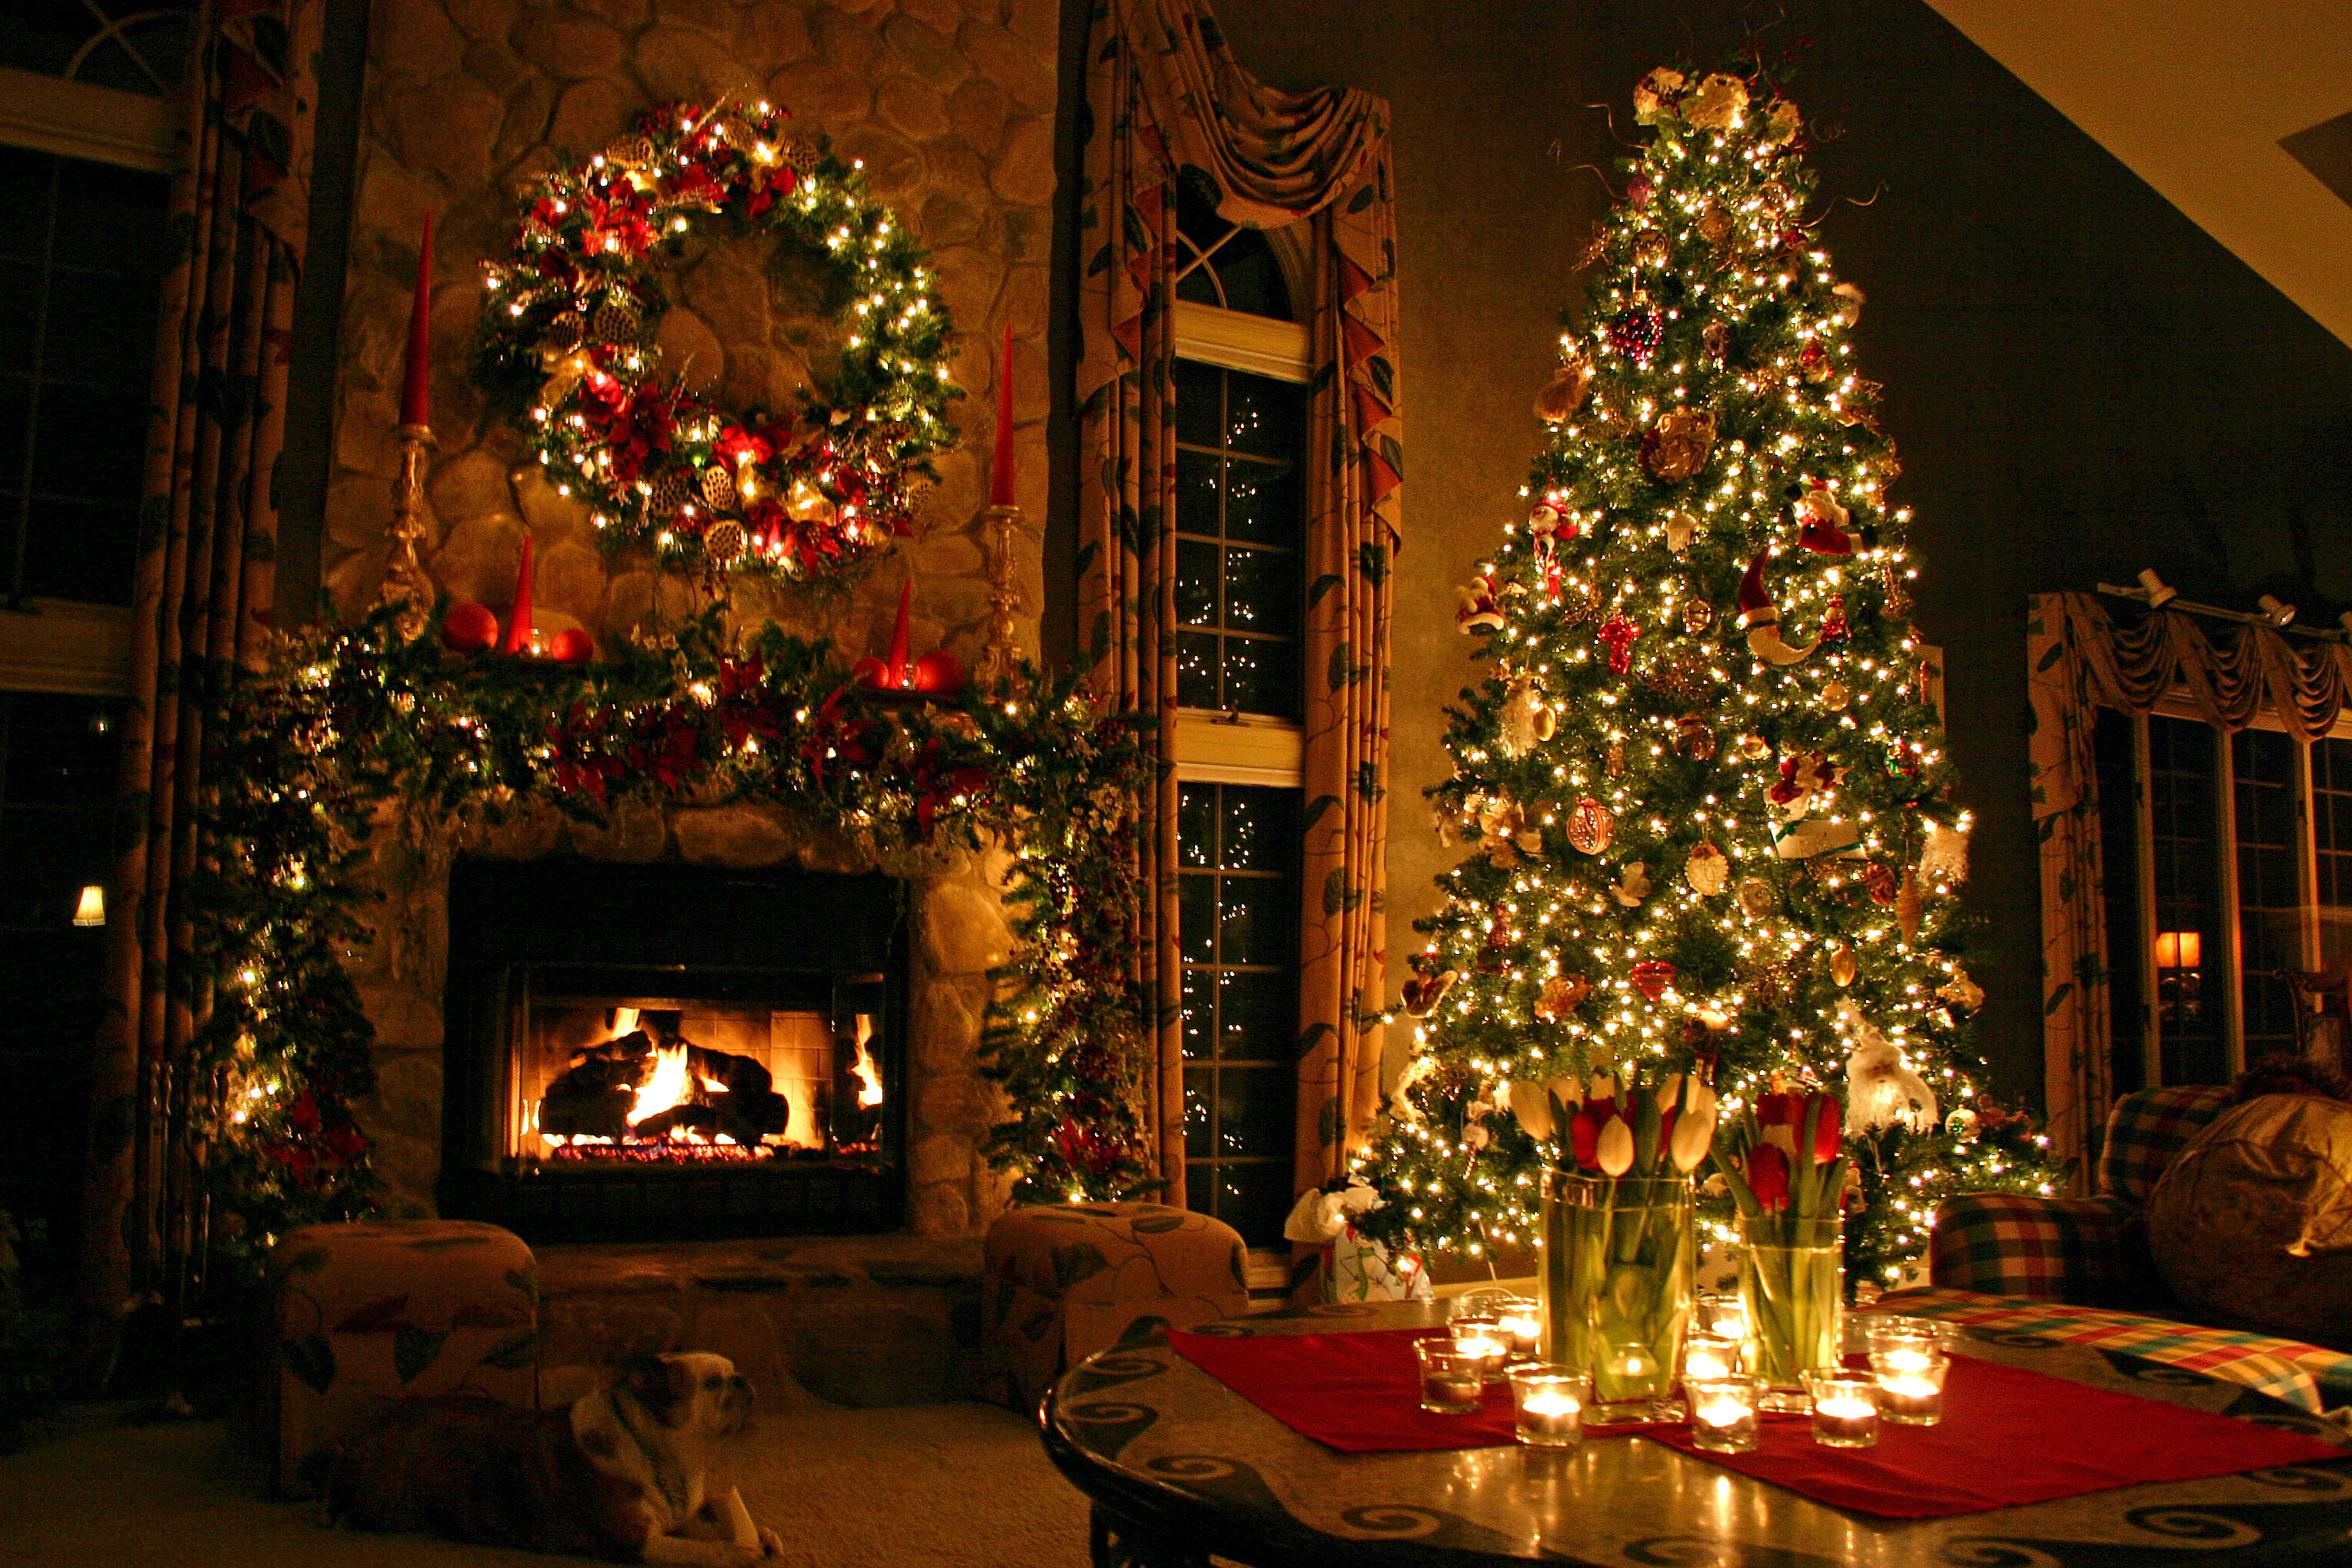 tapete weihnachten,weihnachten,weihnachtsbaum,weihnachtsdekoration,weihnachtsbeleuchtung,beleuchtung